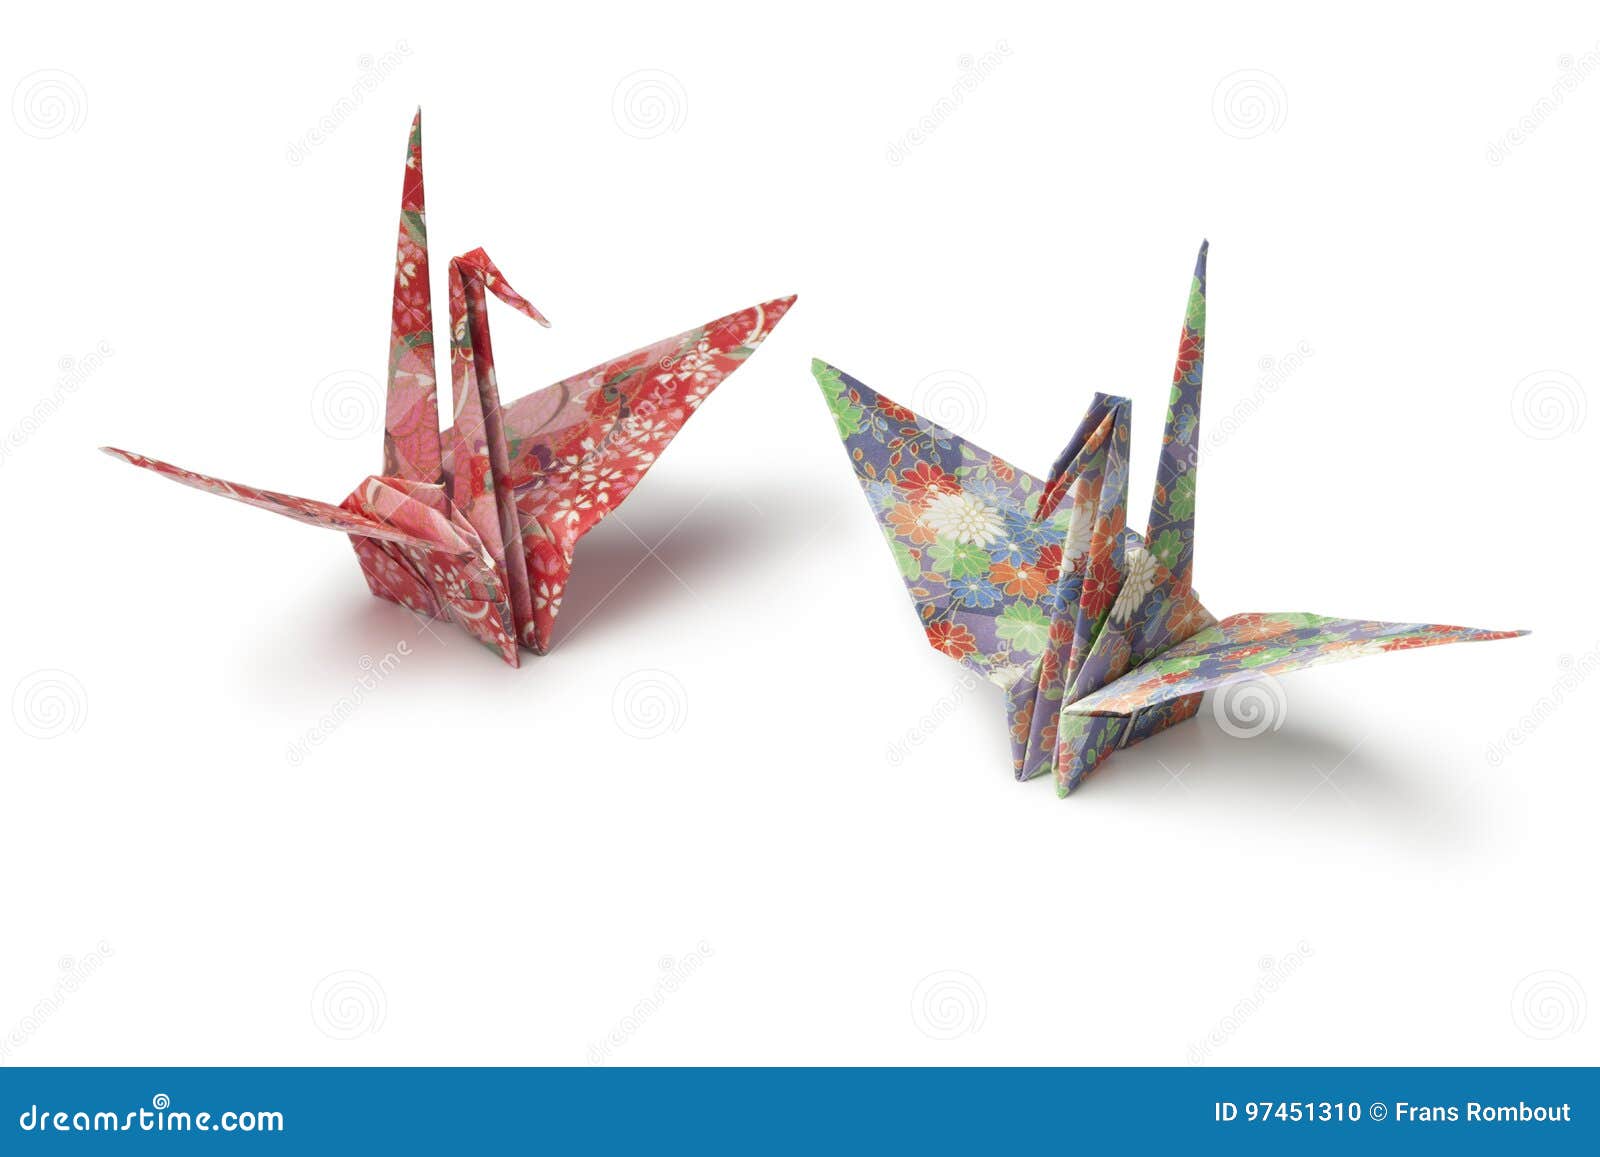 origami paper crane birds